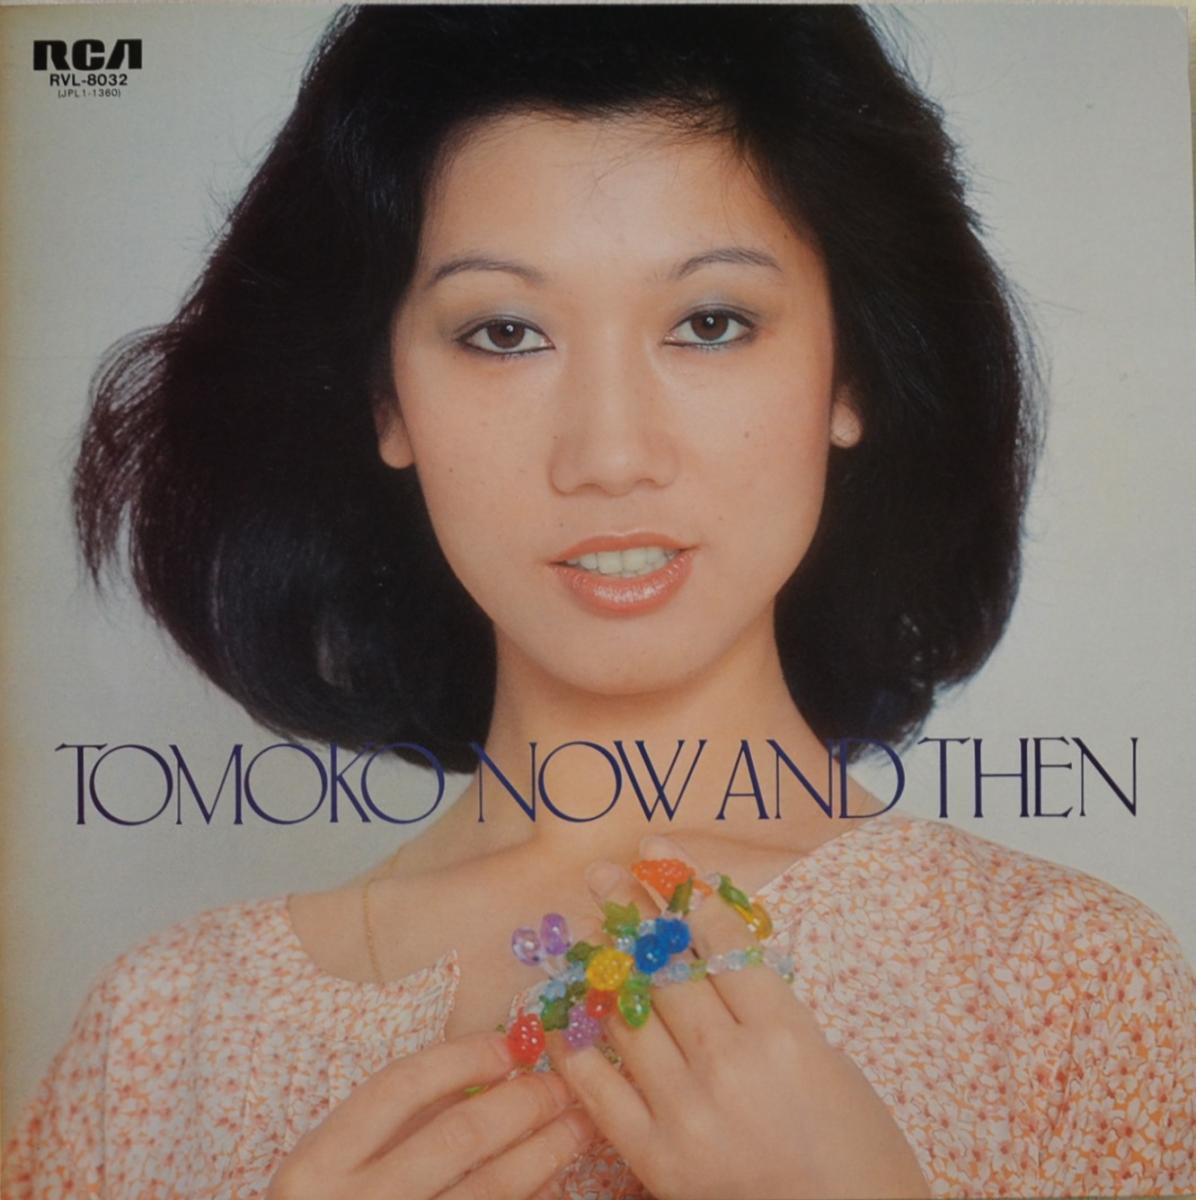 惣領智子 TOMOKO SORYO / ナウ・アンド・ゼン NOW AND THEN (終わりのない歌) (LP)